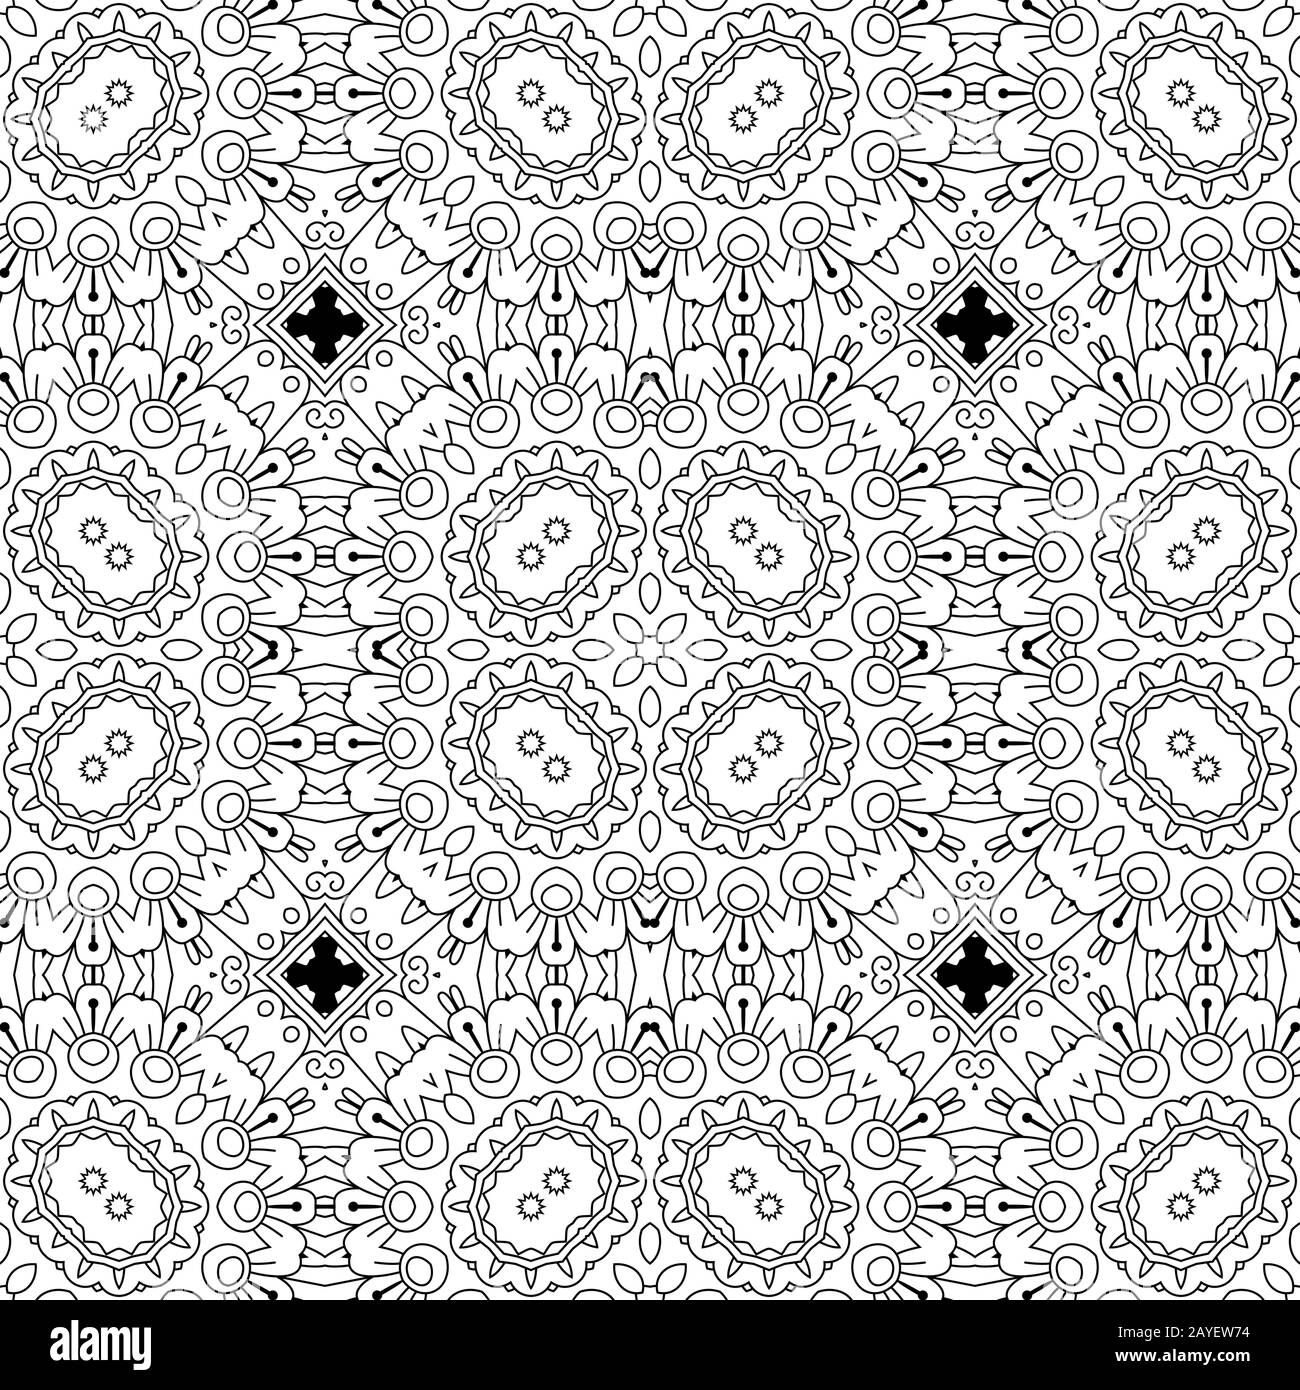 Seamless pattern Stock Photo